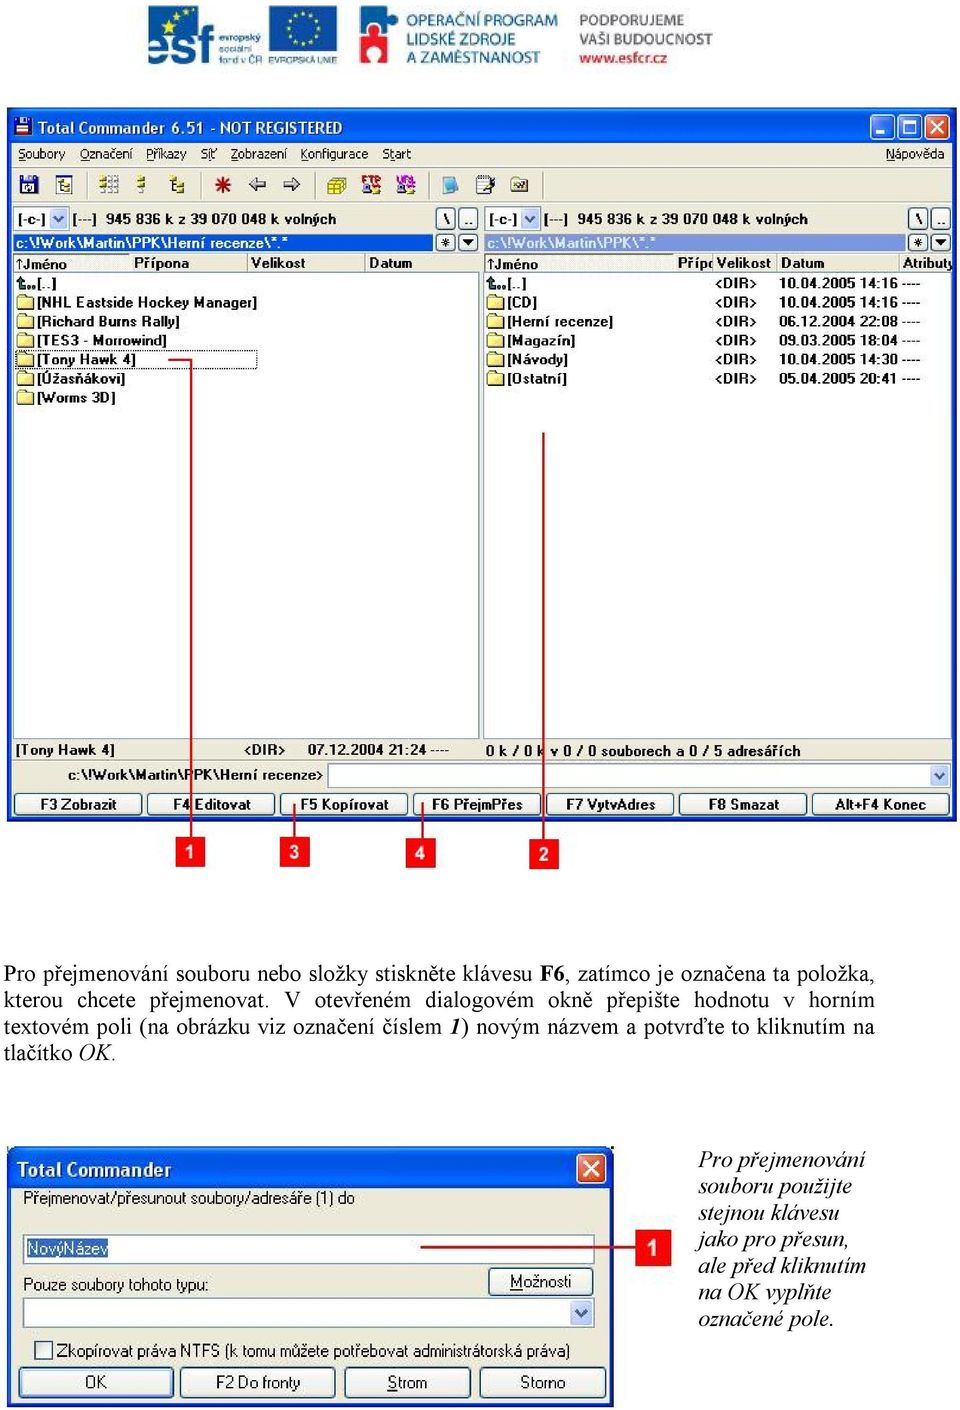 V otevřeném dialogovém okně přepište hodnotu v horním textovém poli (na obrázku viz označení